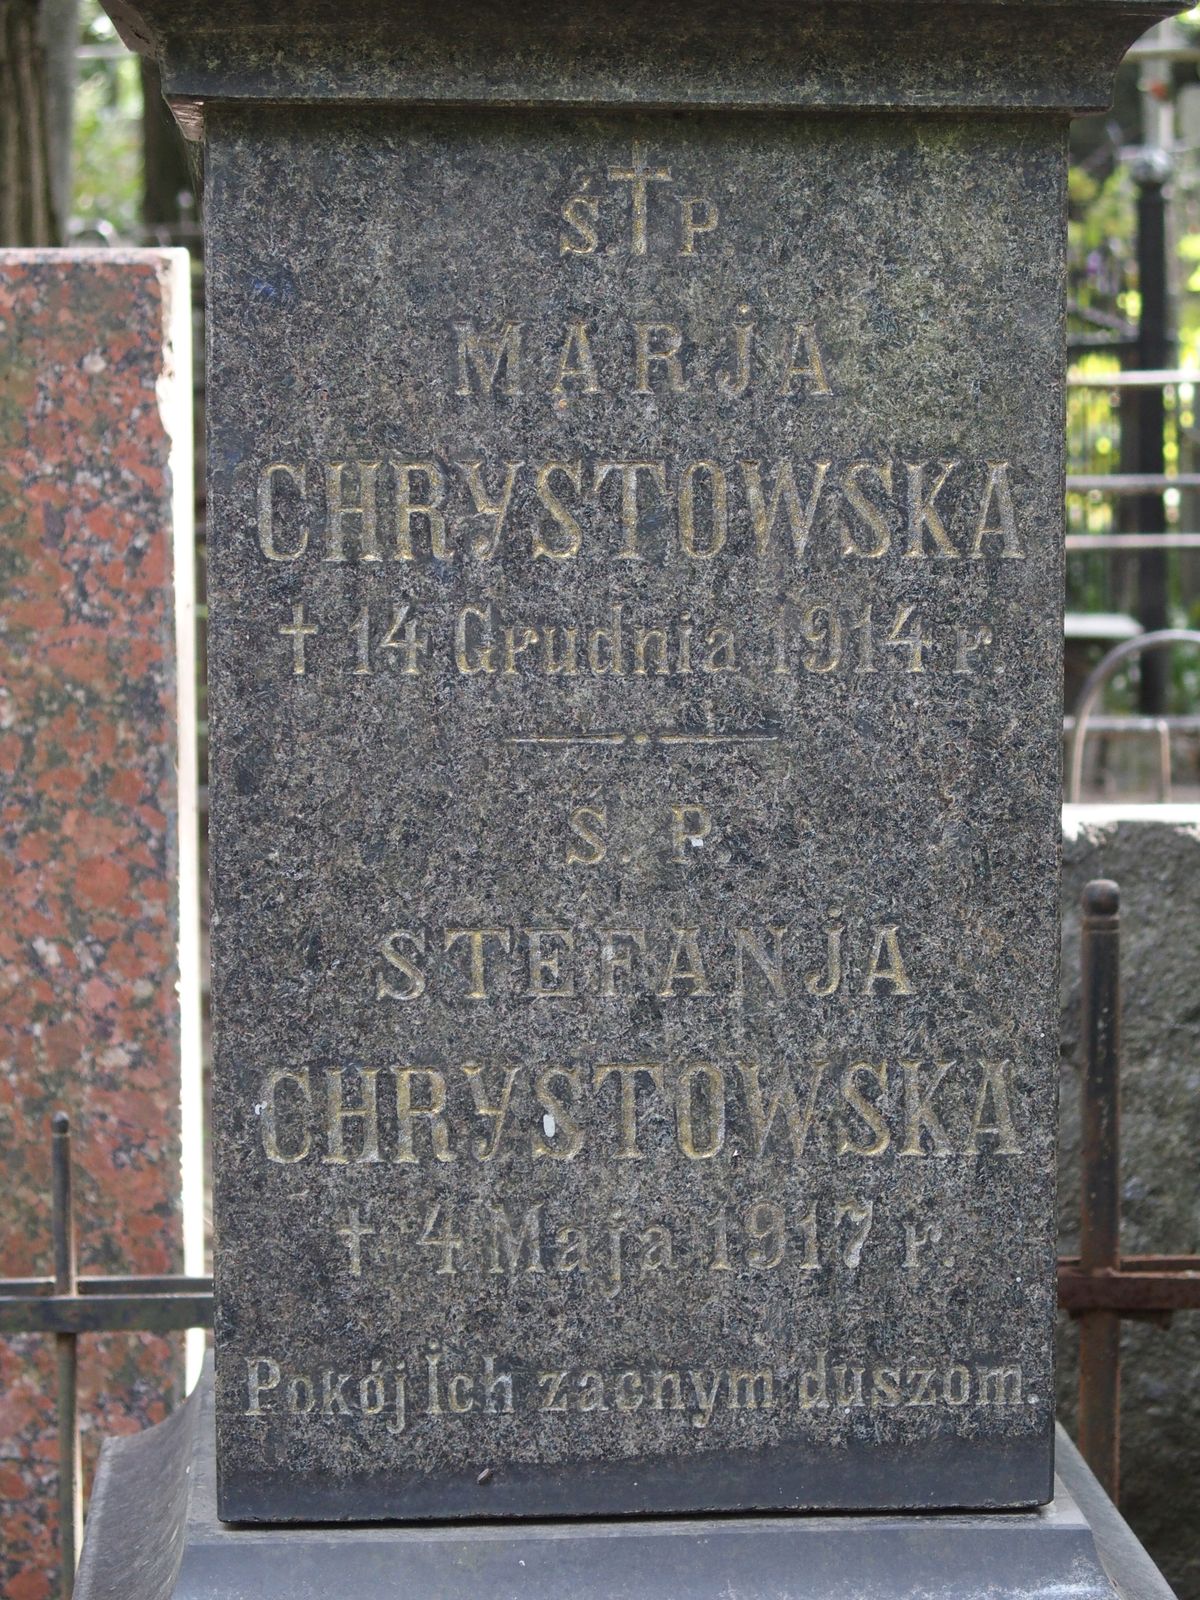 Tombstone of Maria Chrystowska, Stefania Chrystowska, Bajkova cemetery, Kyiv, 2021